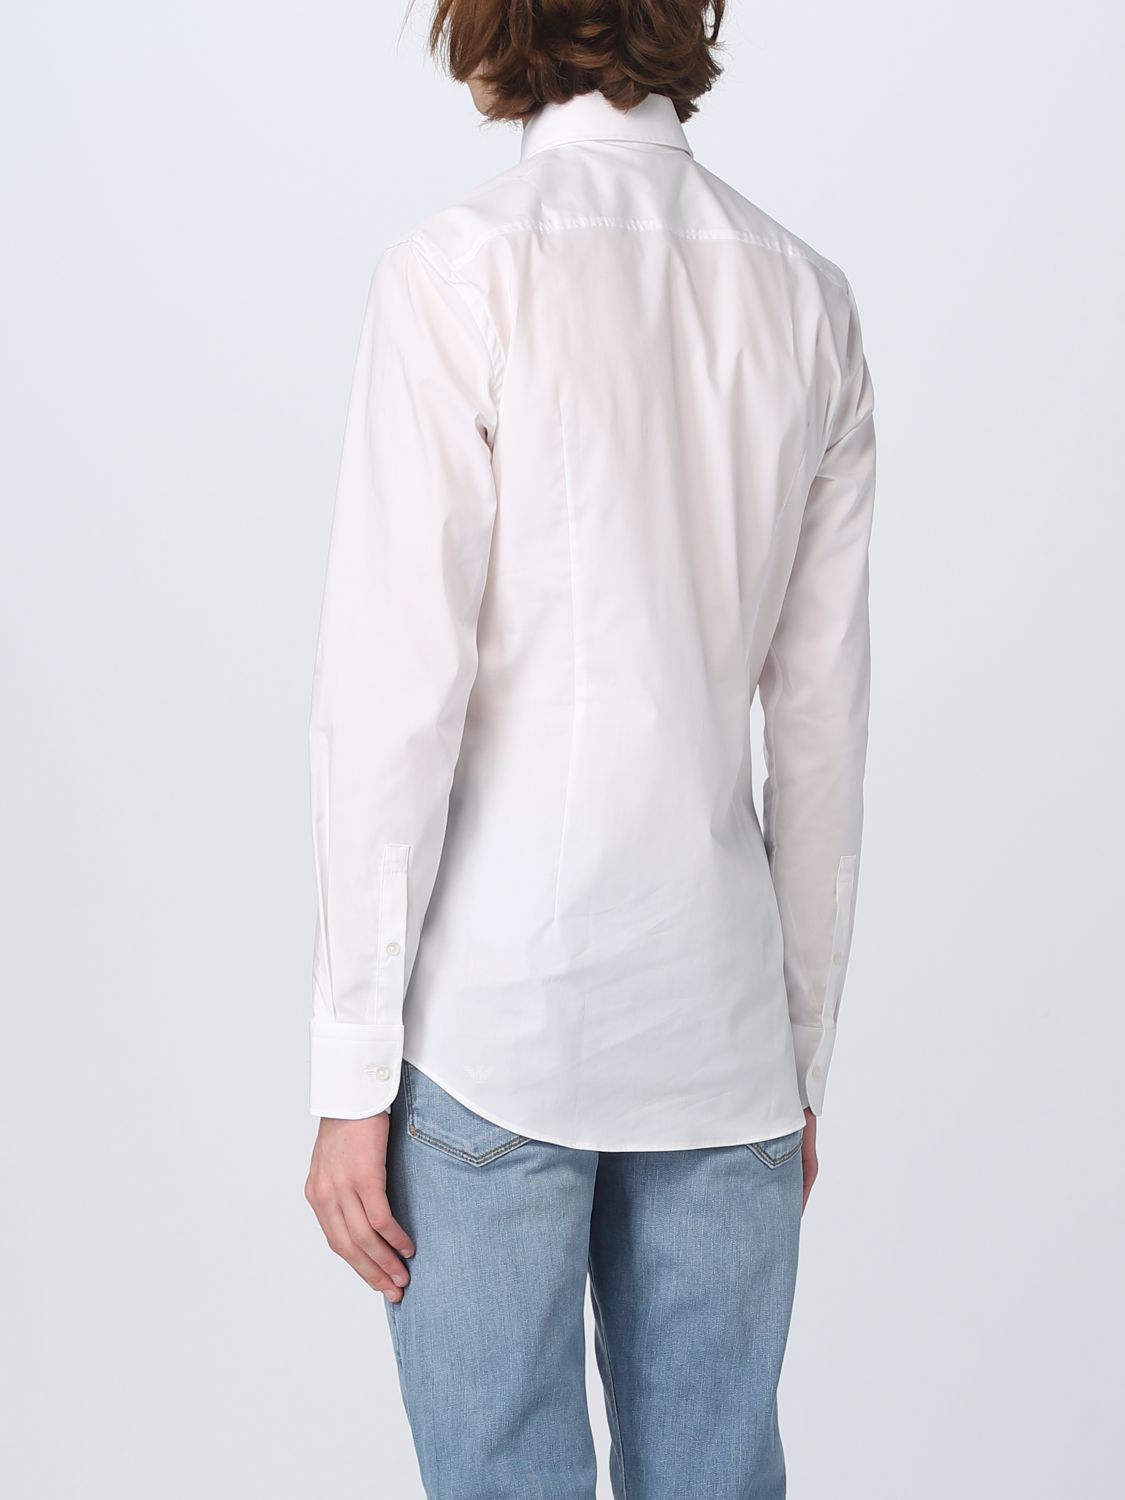 BOSS: shirt for man - White | Boss shirt 50469345 online on GIGLIO.COM